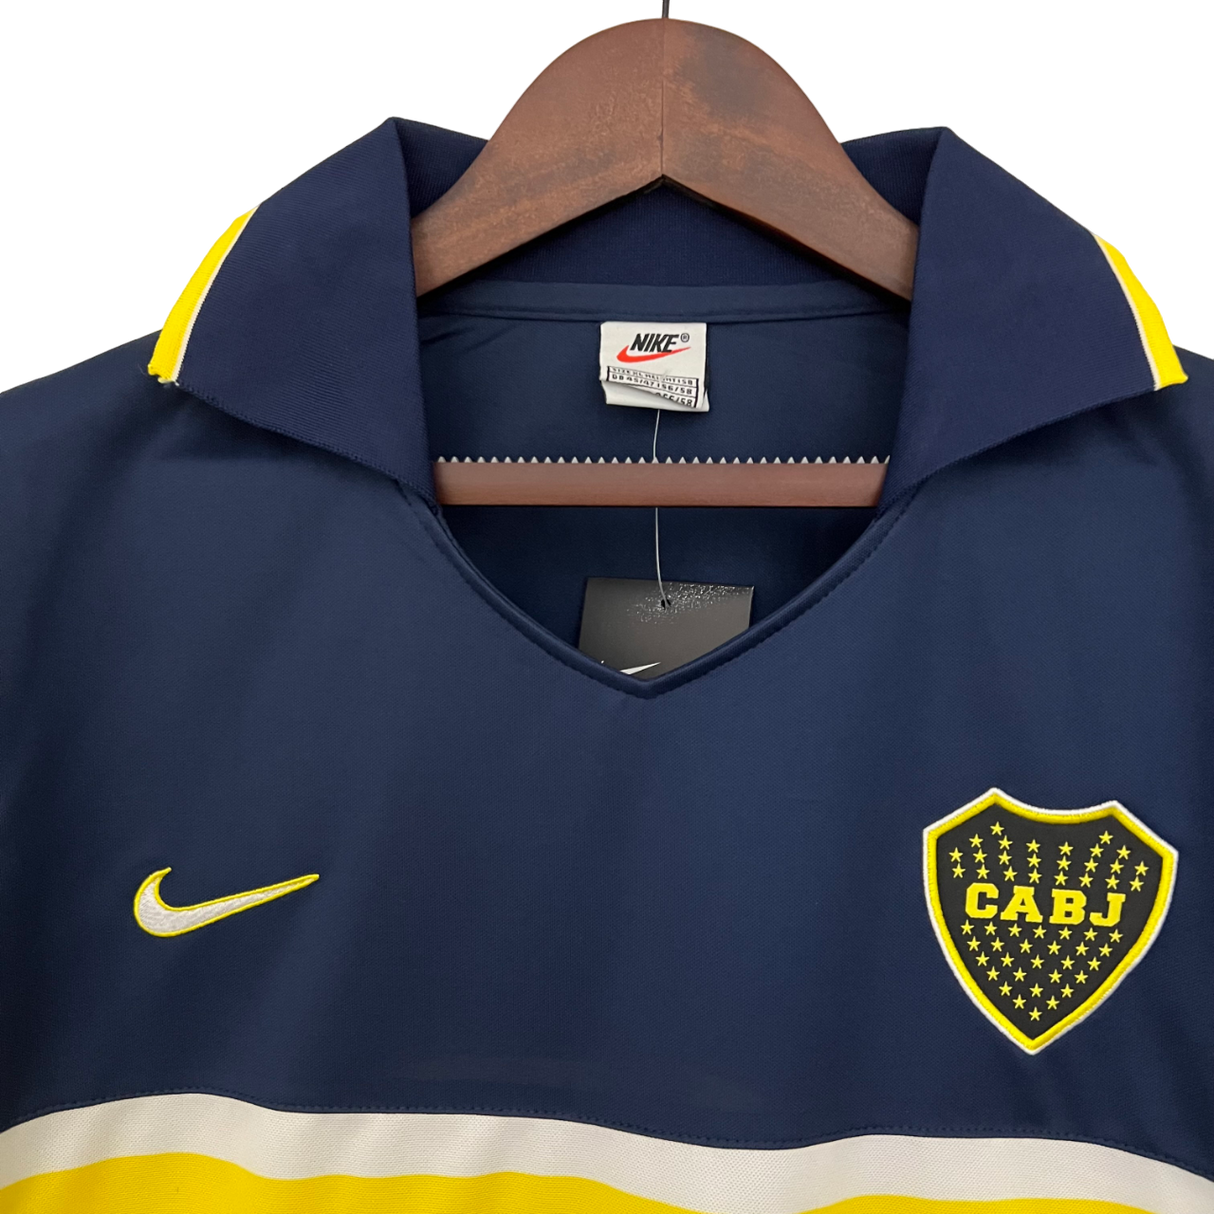 Boca Juniors Retro 96/97 Home